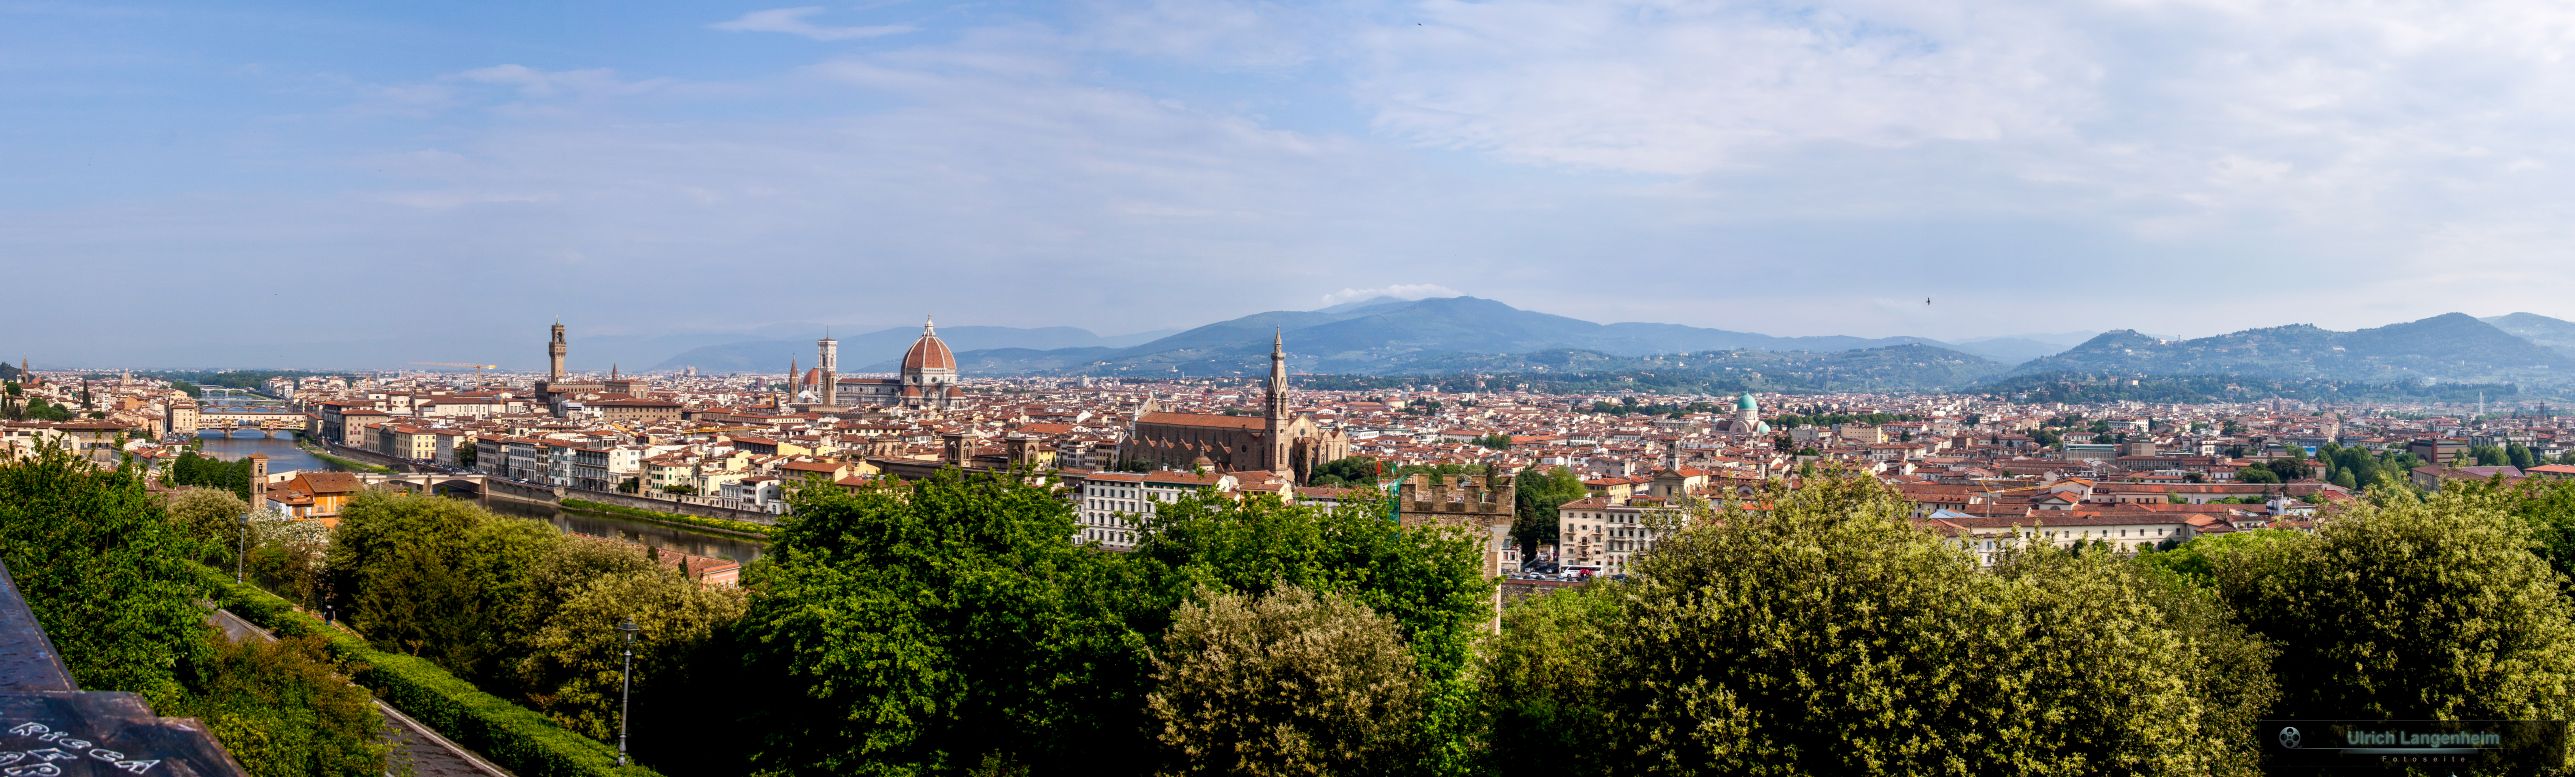 Florenz_Panorama1_LR6